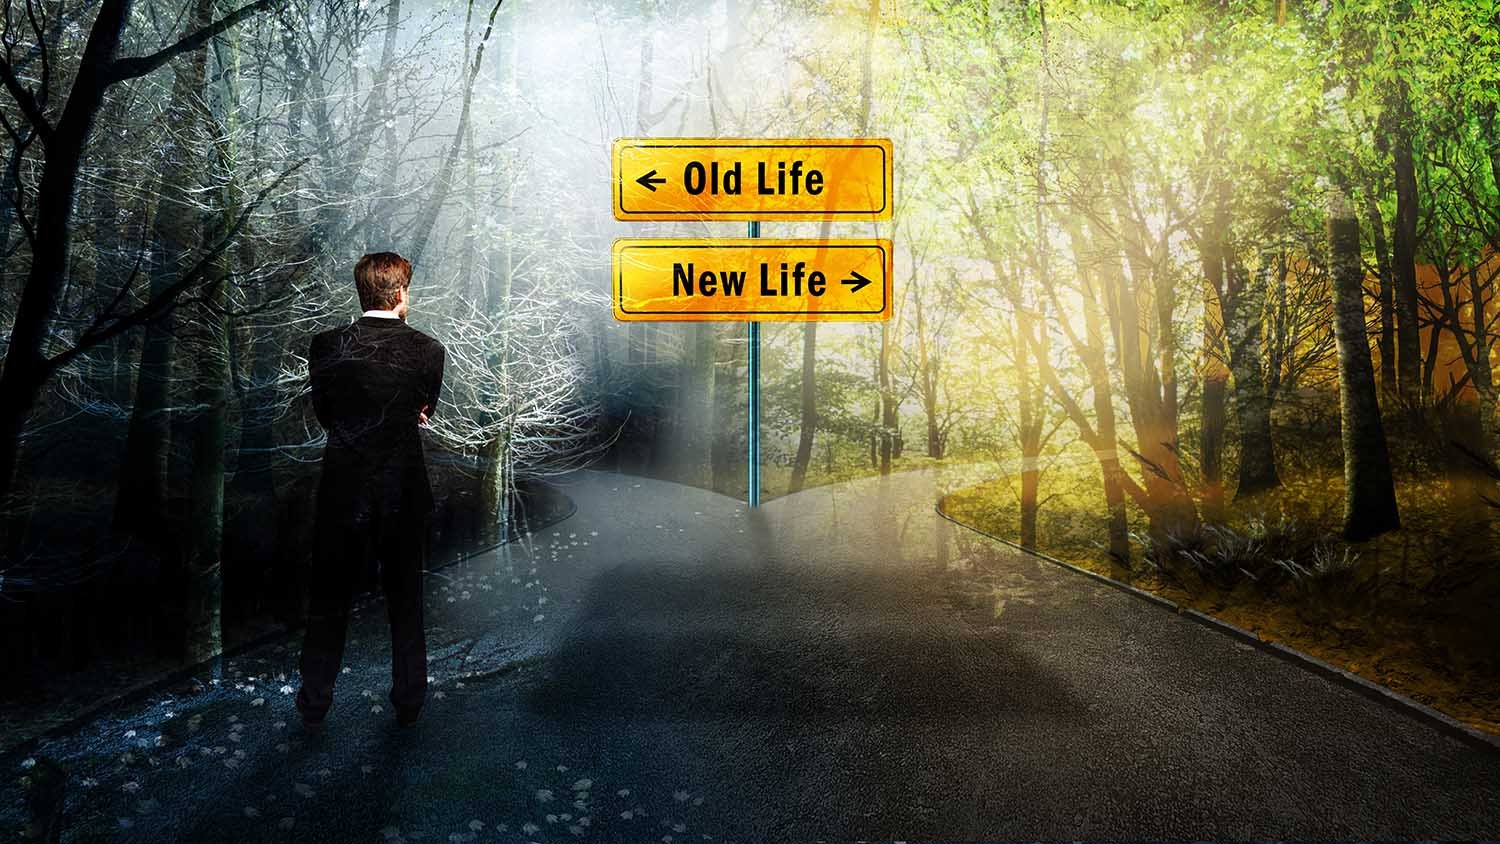 Choix d'un chemin vers une vie nouvelle ou passée